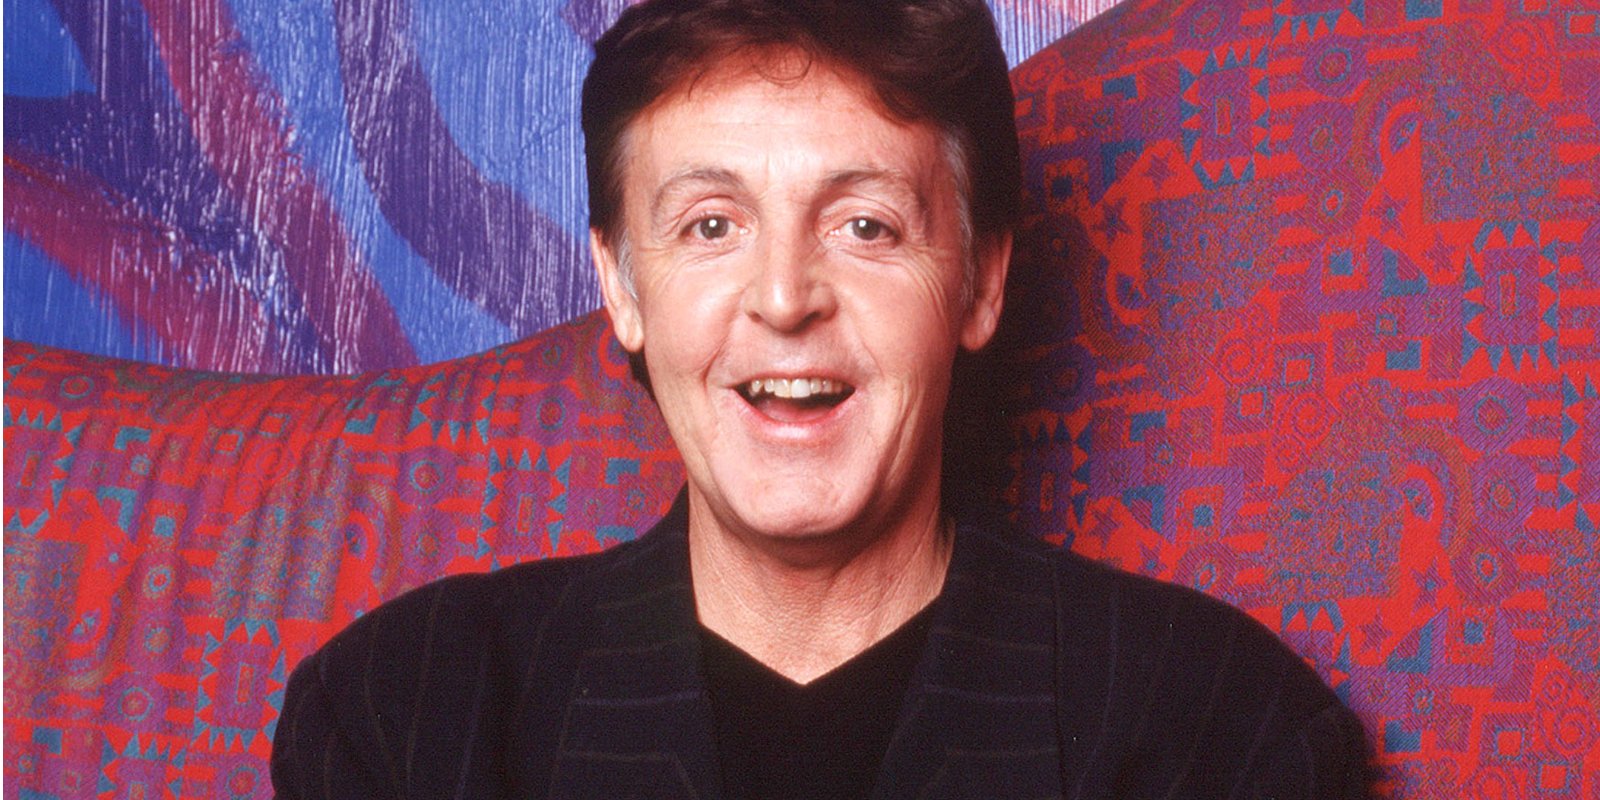 Singer Paul McCartney poses